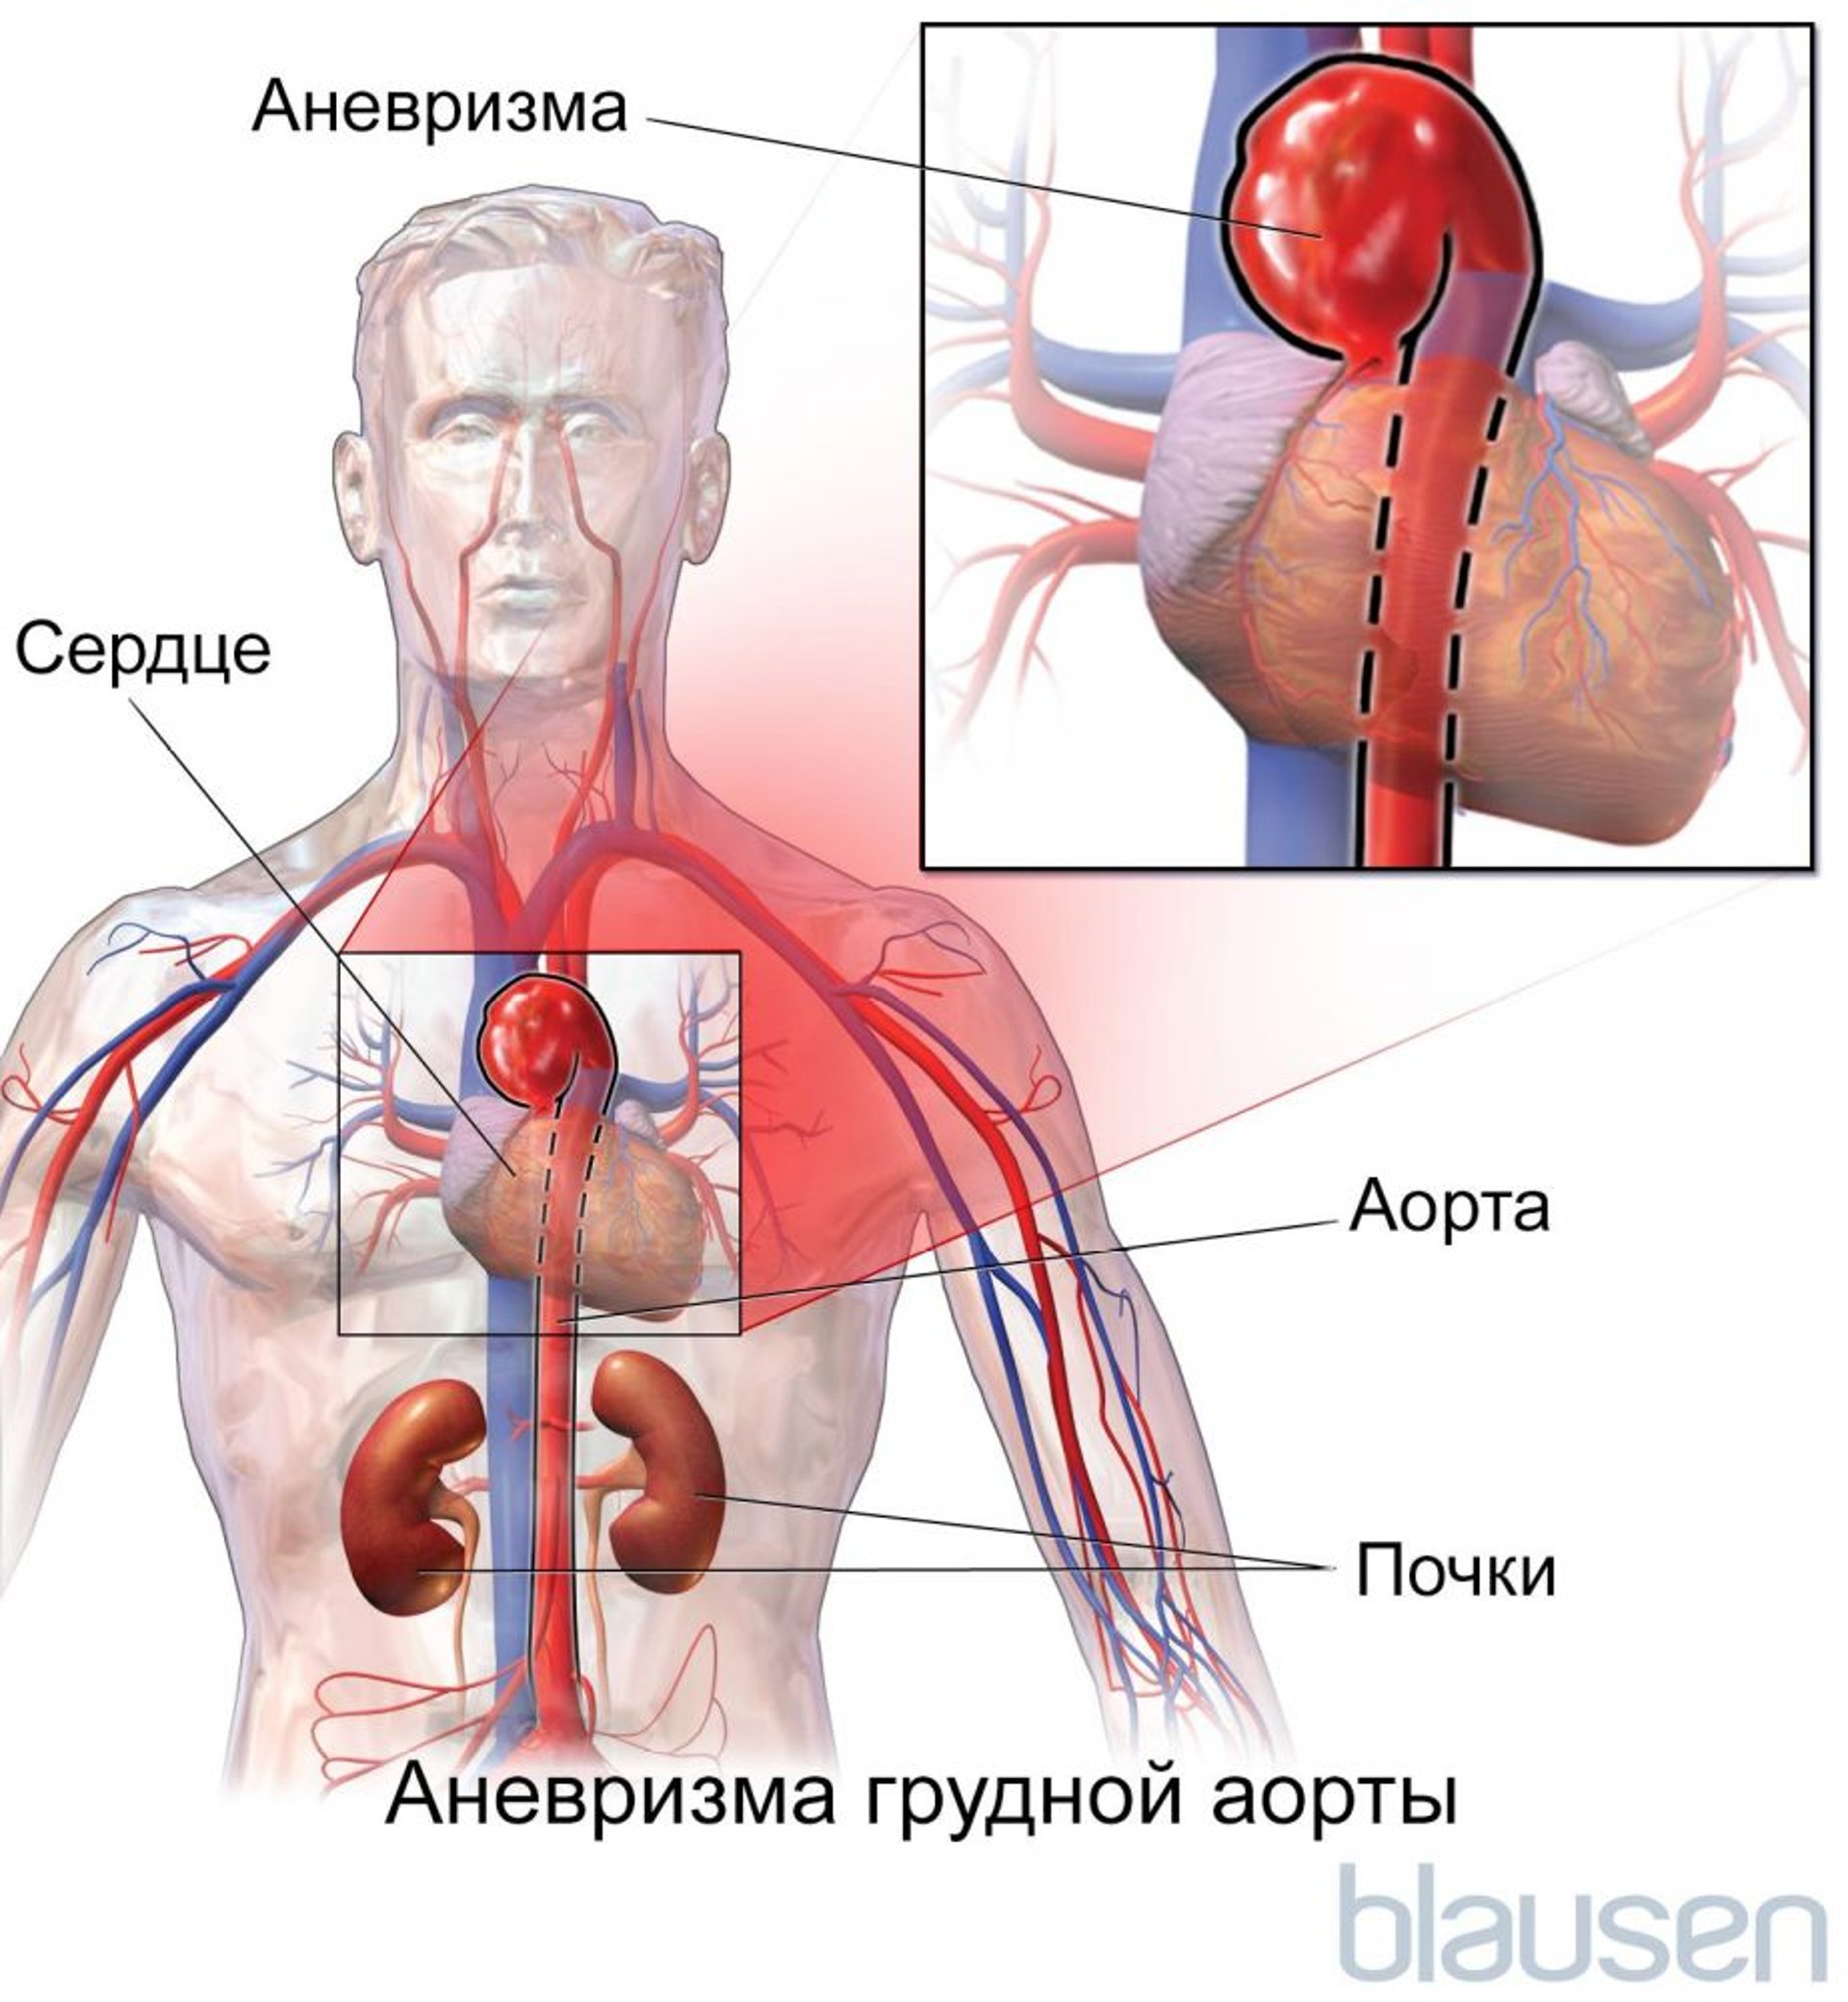 Аневризма грудной аорты